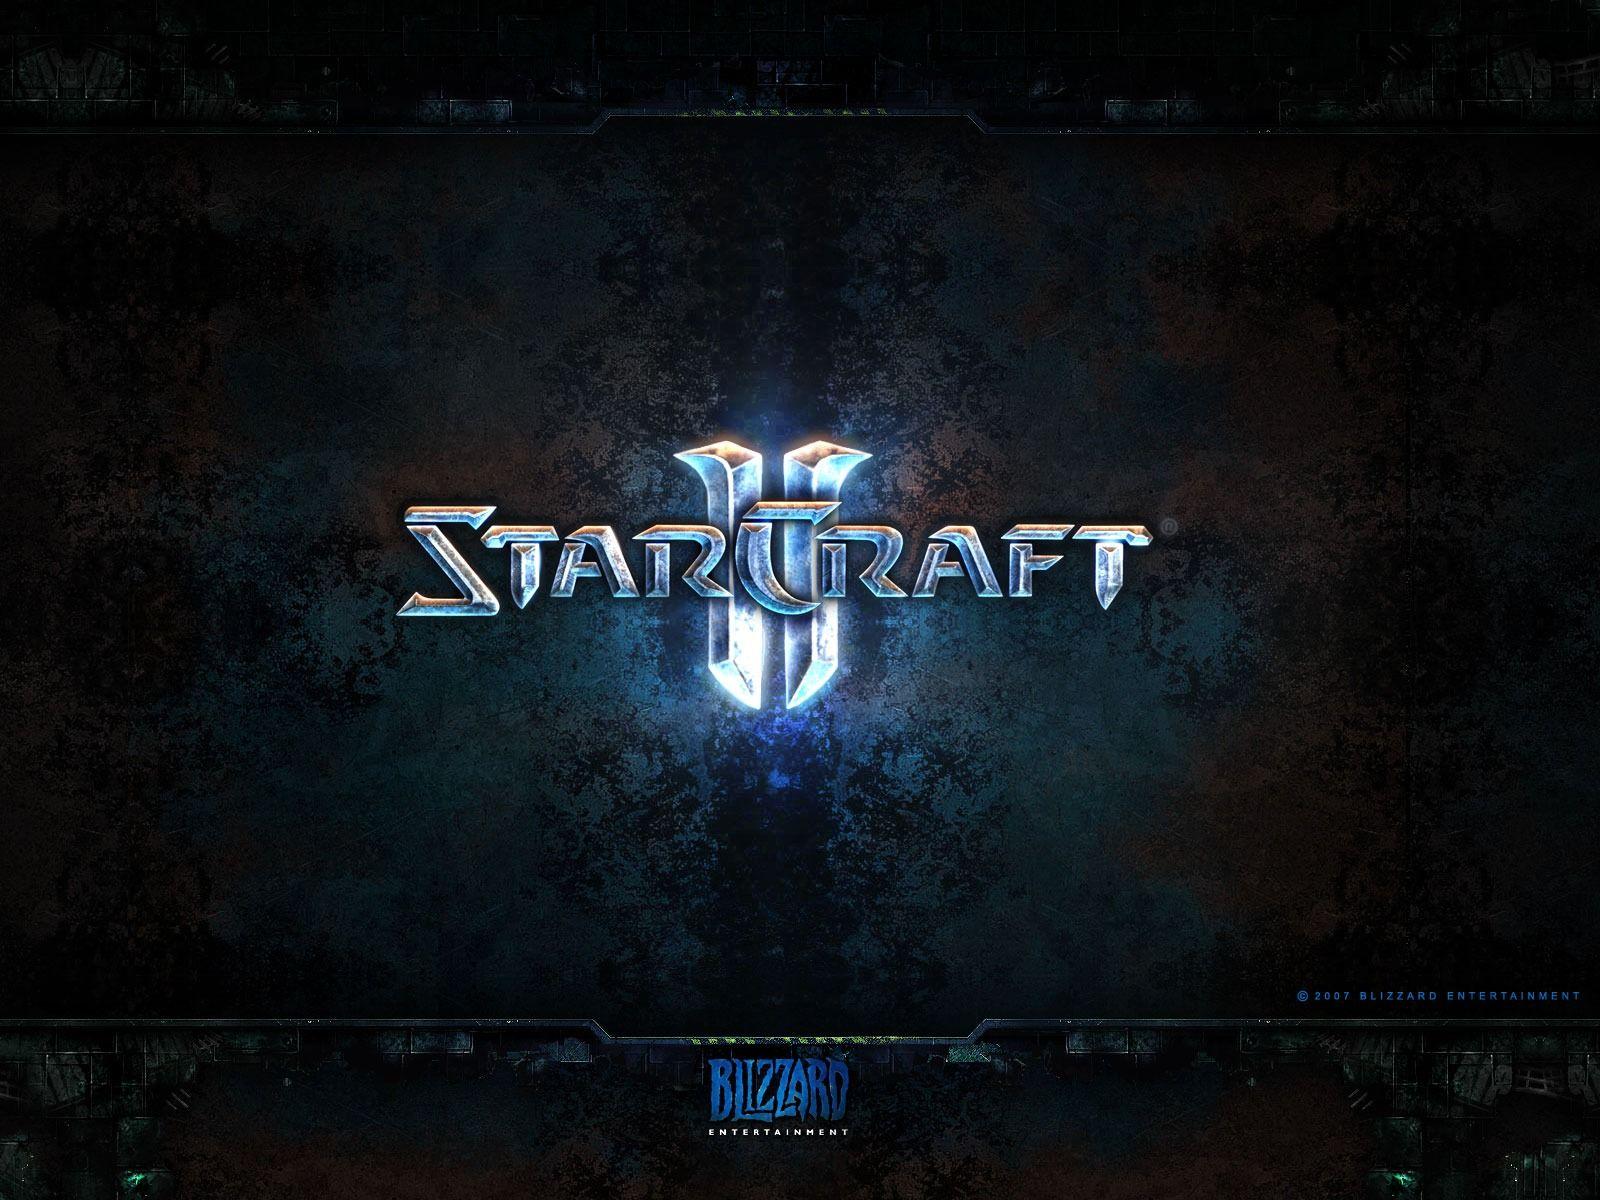 Stracraft 2 Logo Wallpaper Starcraft 2 Games Wallpaper in jpg